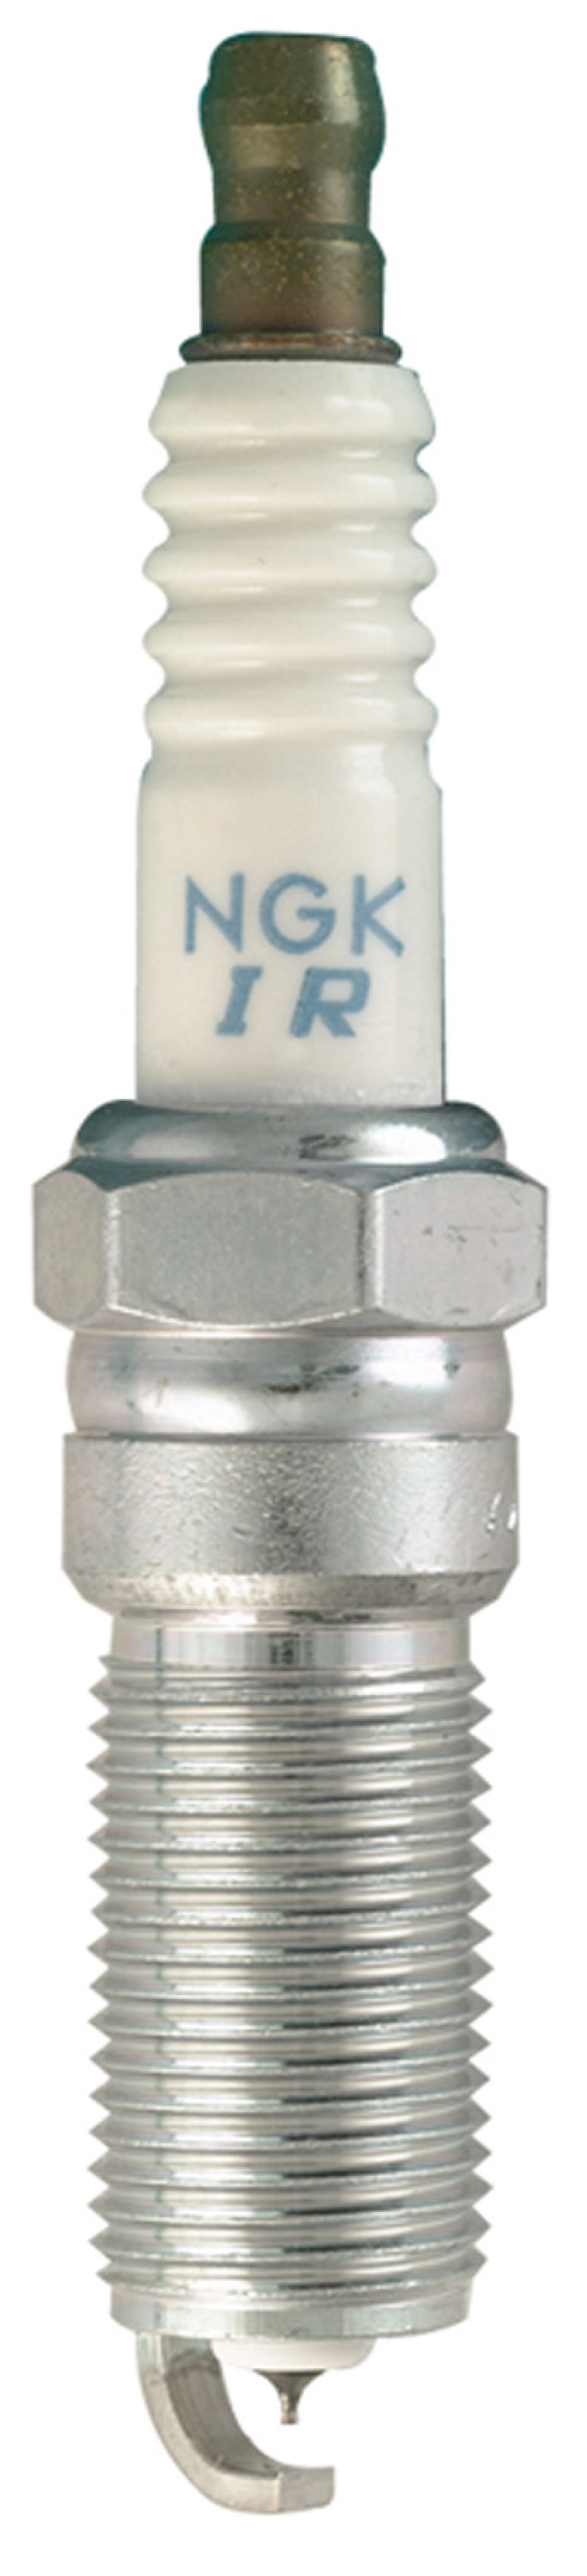 NGK Laser Iridium/Platinum Spark Plug Box of 4 (LTR5BI-13) - 90083